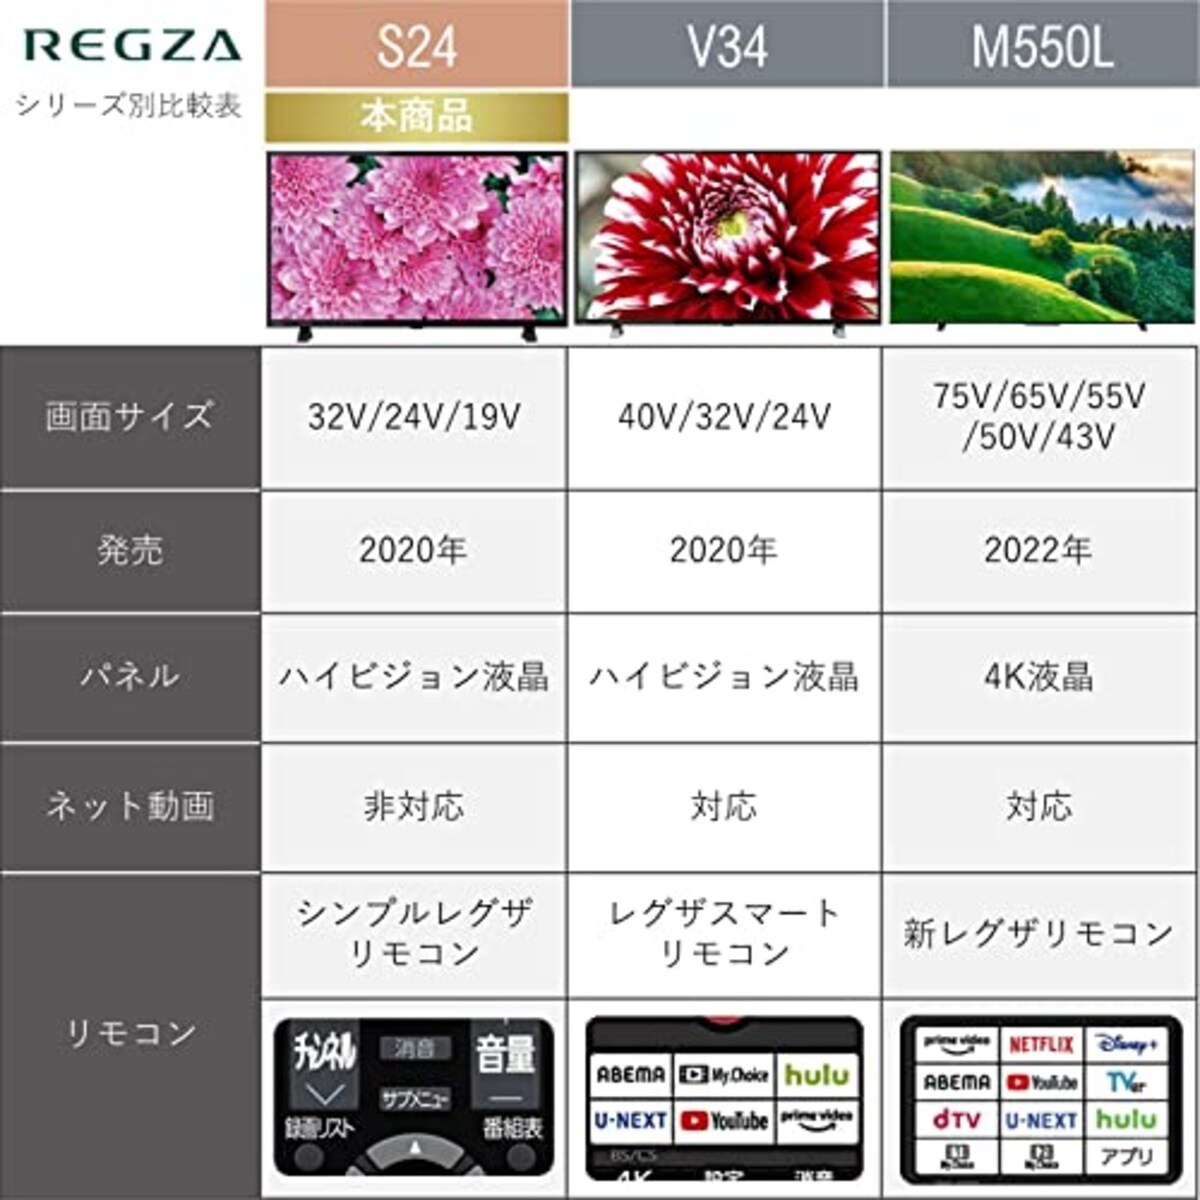  東芝 24V型 液晶テレビ レグザ 24S24 ハイビジョン 外付けHDD ウラ録対応 （2020年モデル）画像2 